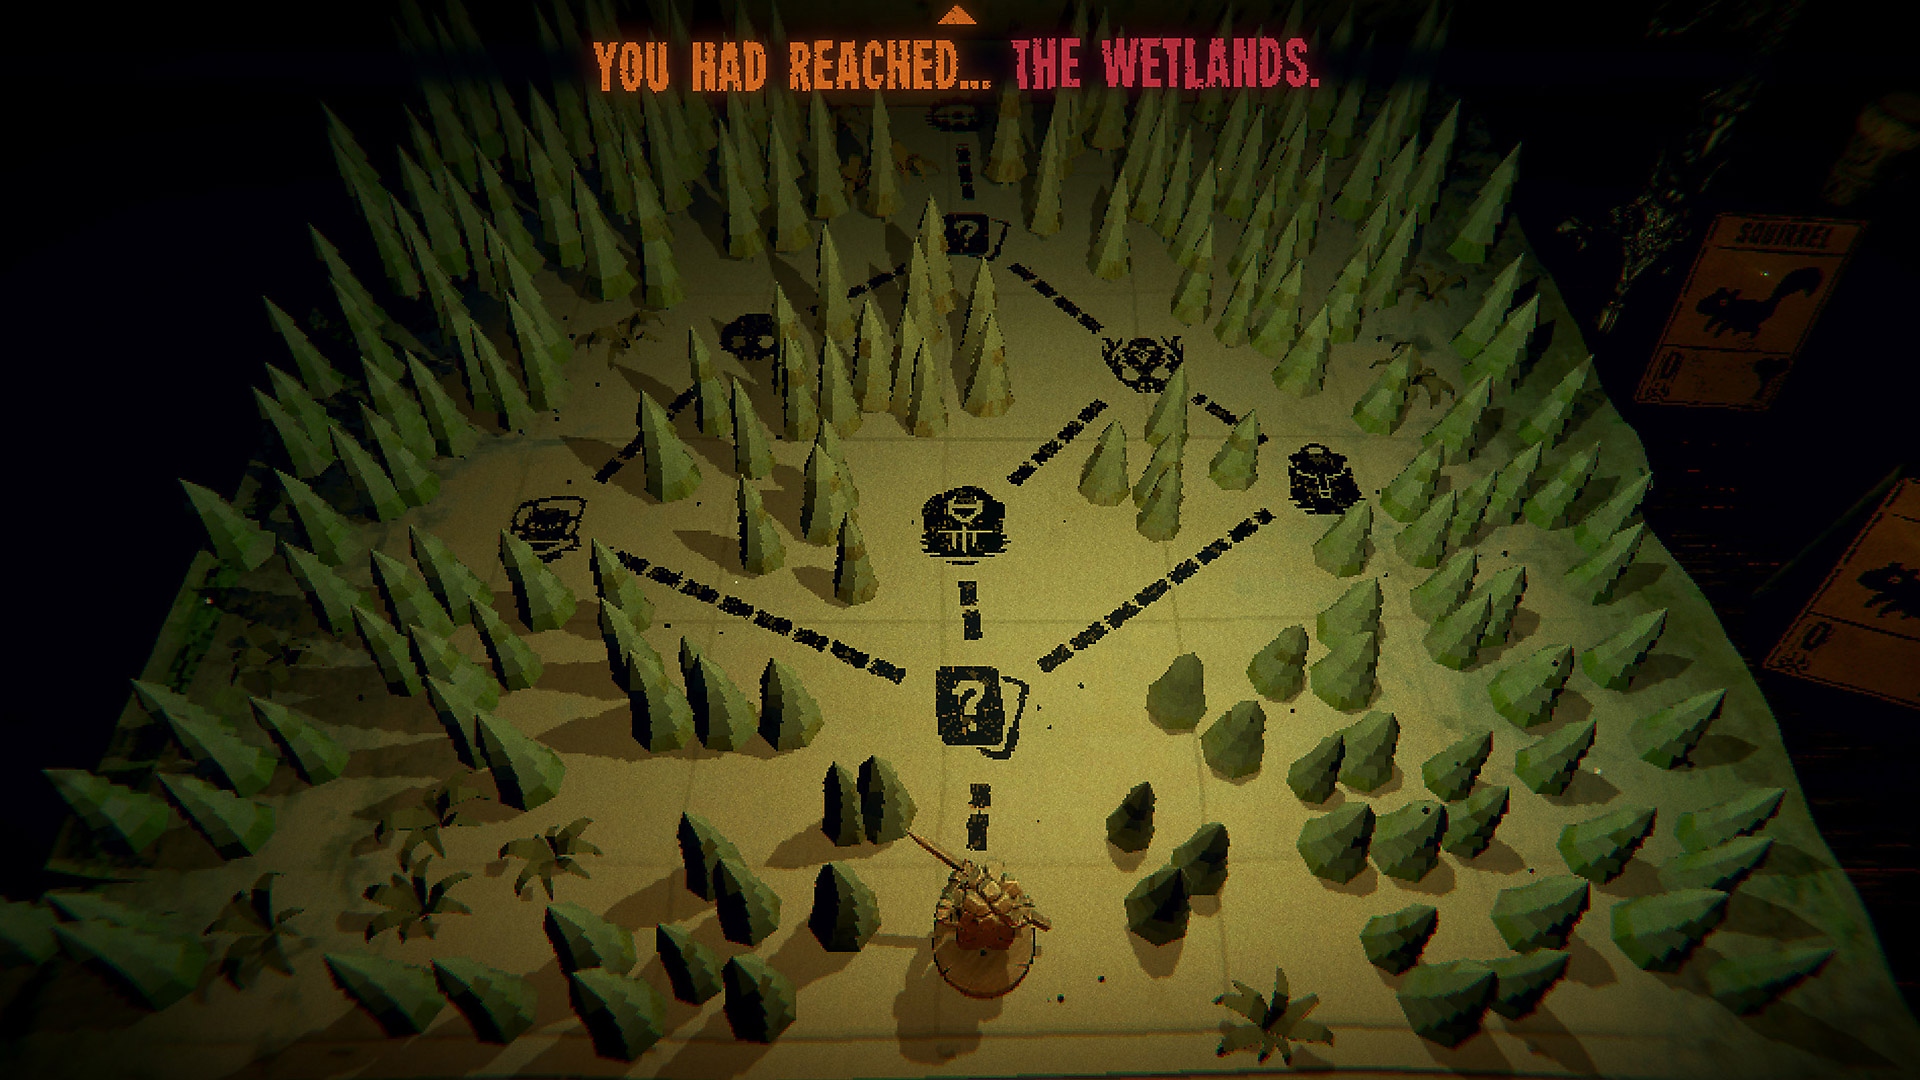 Capture d'écran de gameplay d'Inscryption montrant une carte d’une forêt avec plusieurs chemins entre les arbres.